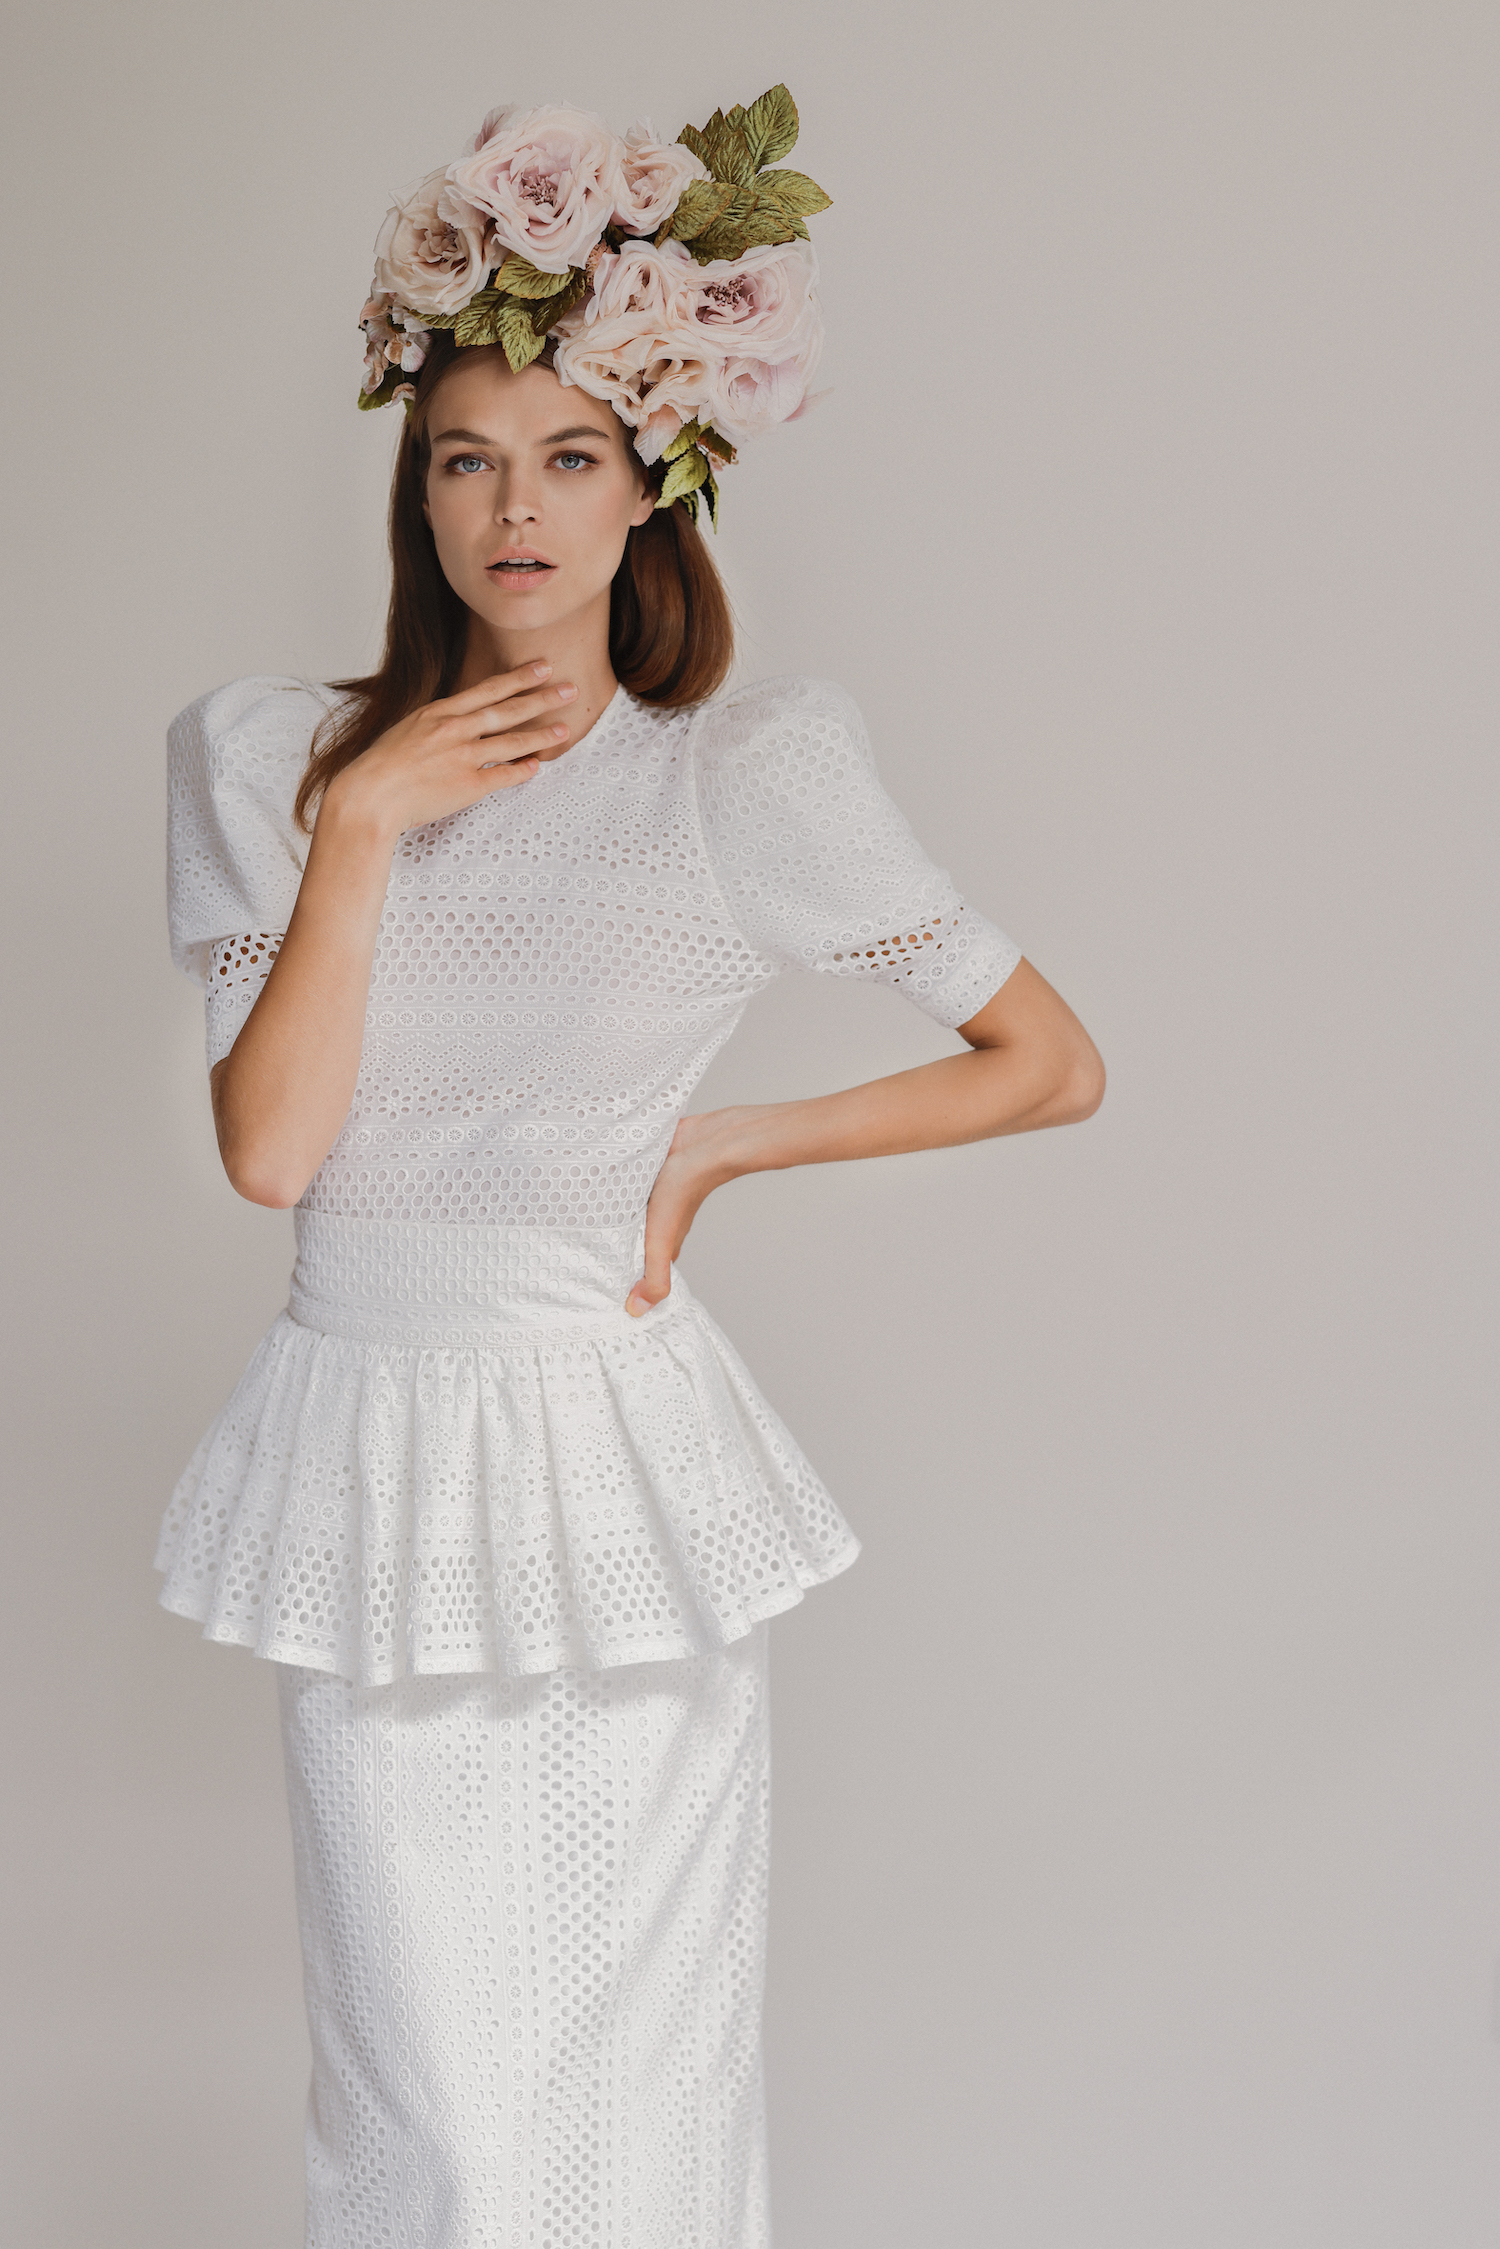 Victoire Vermeulen Collection 2021 - Robes de mariée - Blog Mariage Madame C